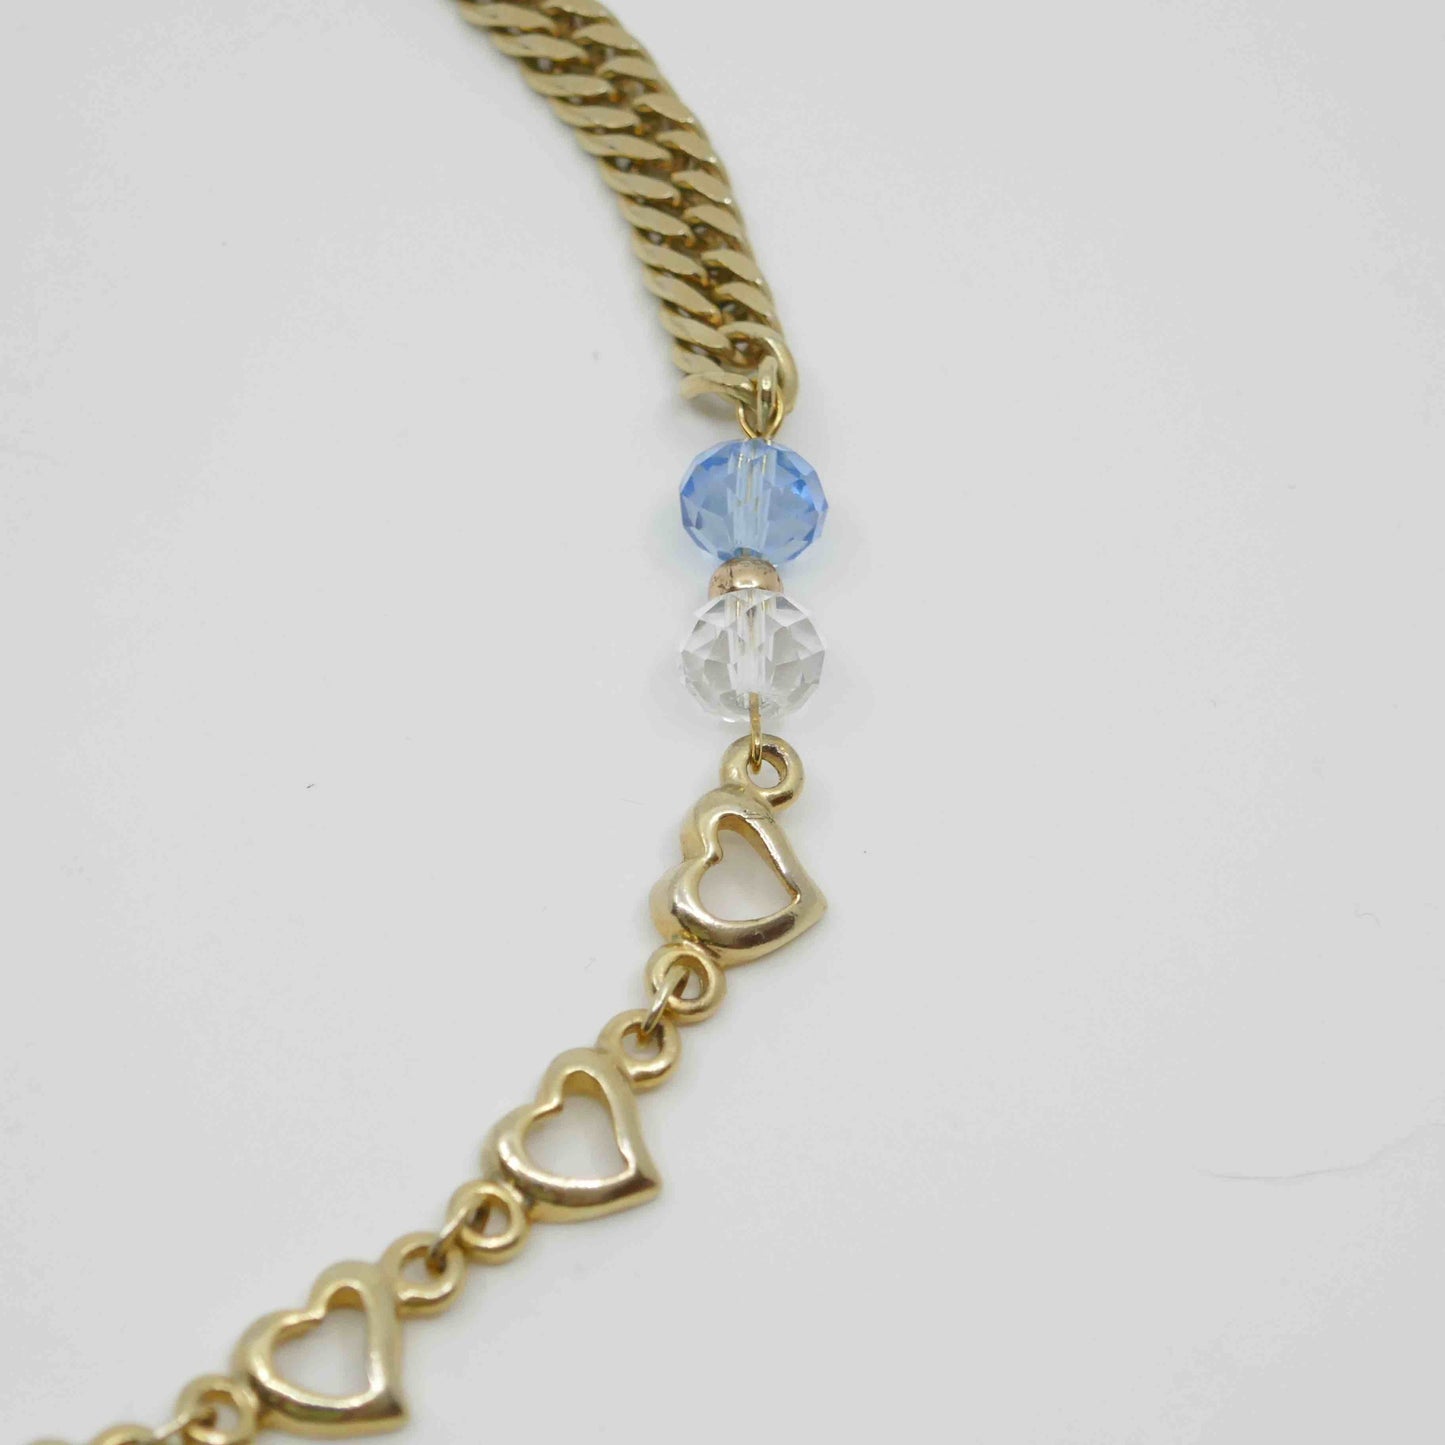 collier dore plein soleil-collier upcycle chaine coeur doree perles bleues et perles transparentes chaine vintage zoom2-atelierlabonneaventure